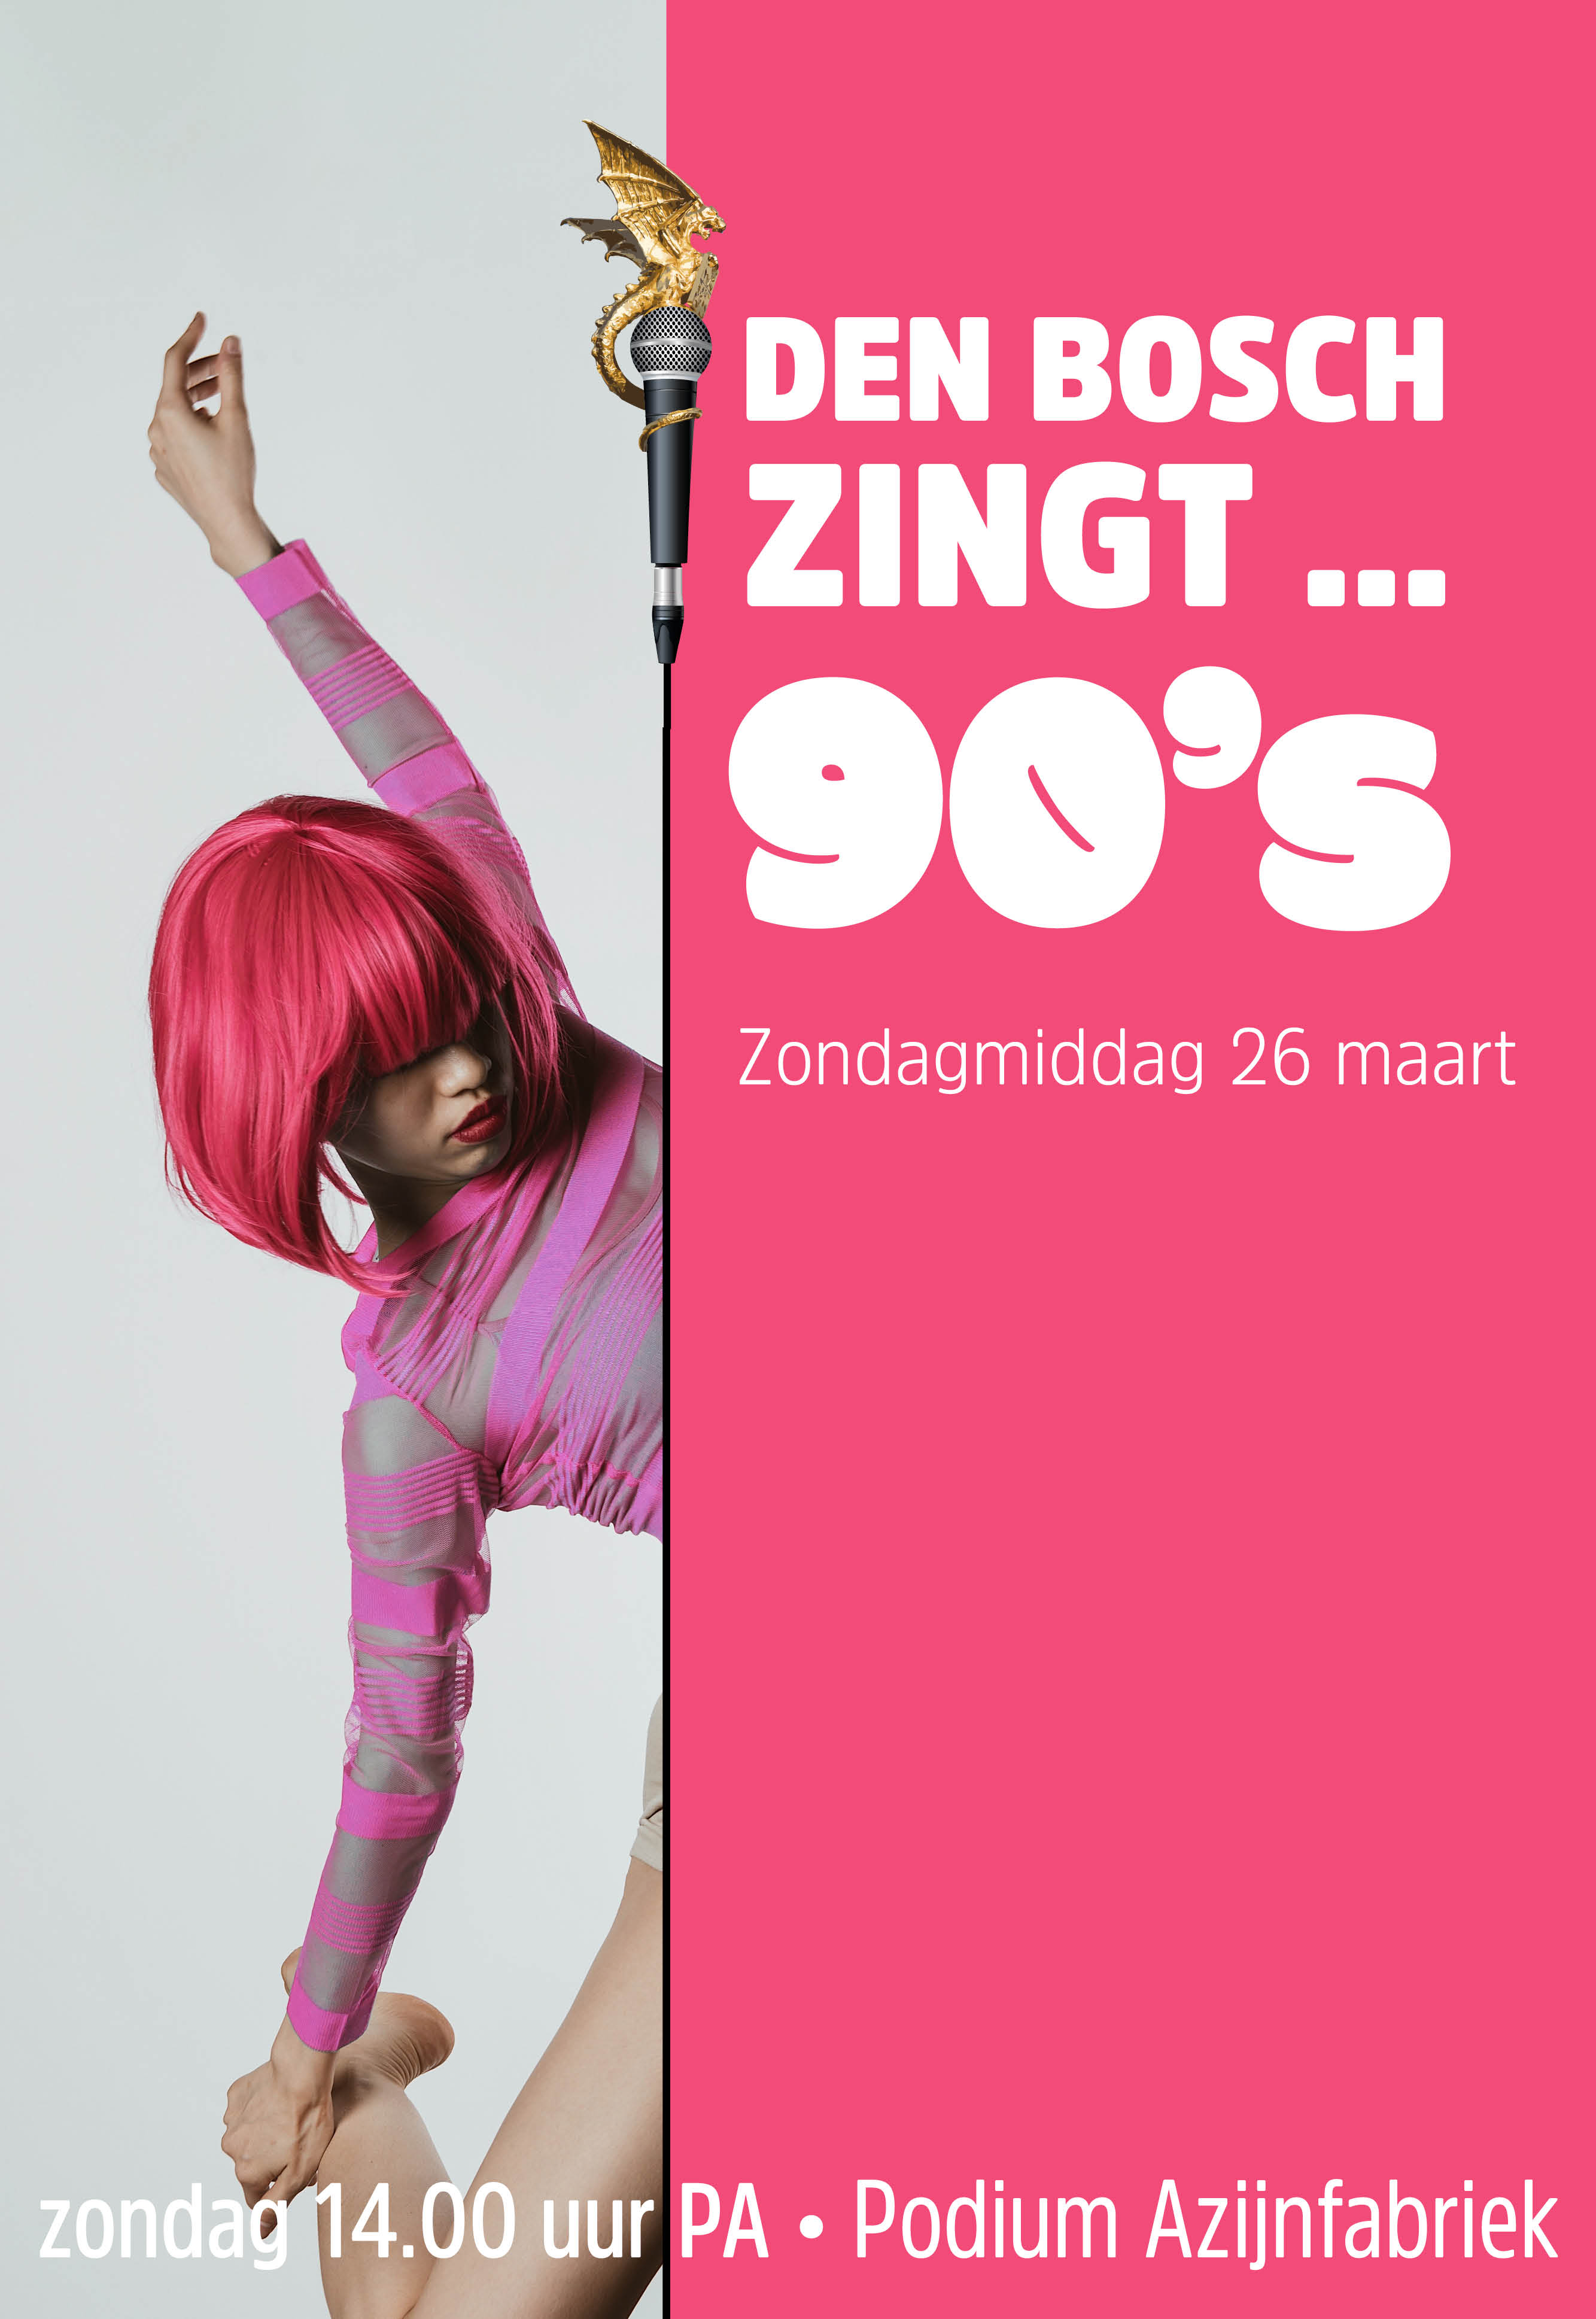 Ticket kopen voor evenement Den Bosch Zingt ... 90's